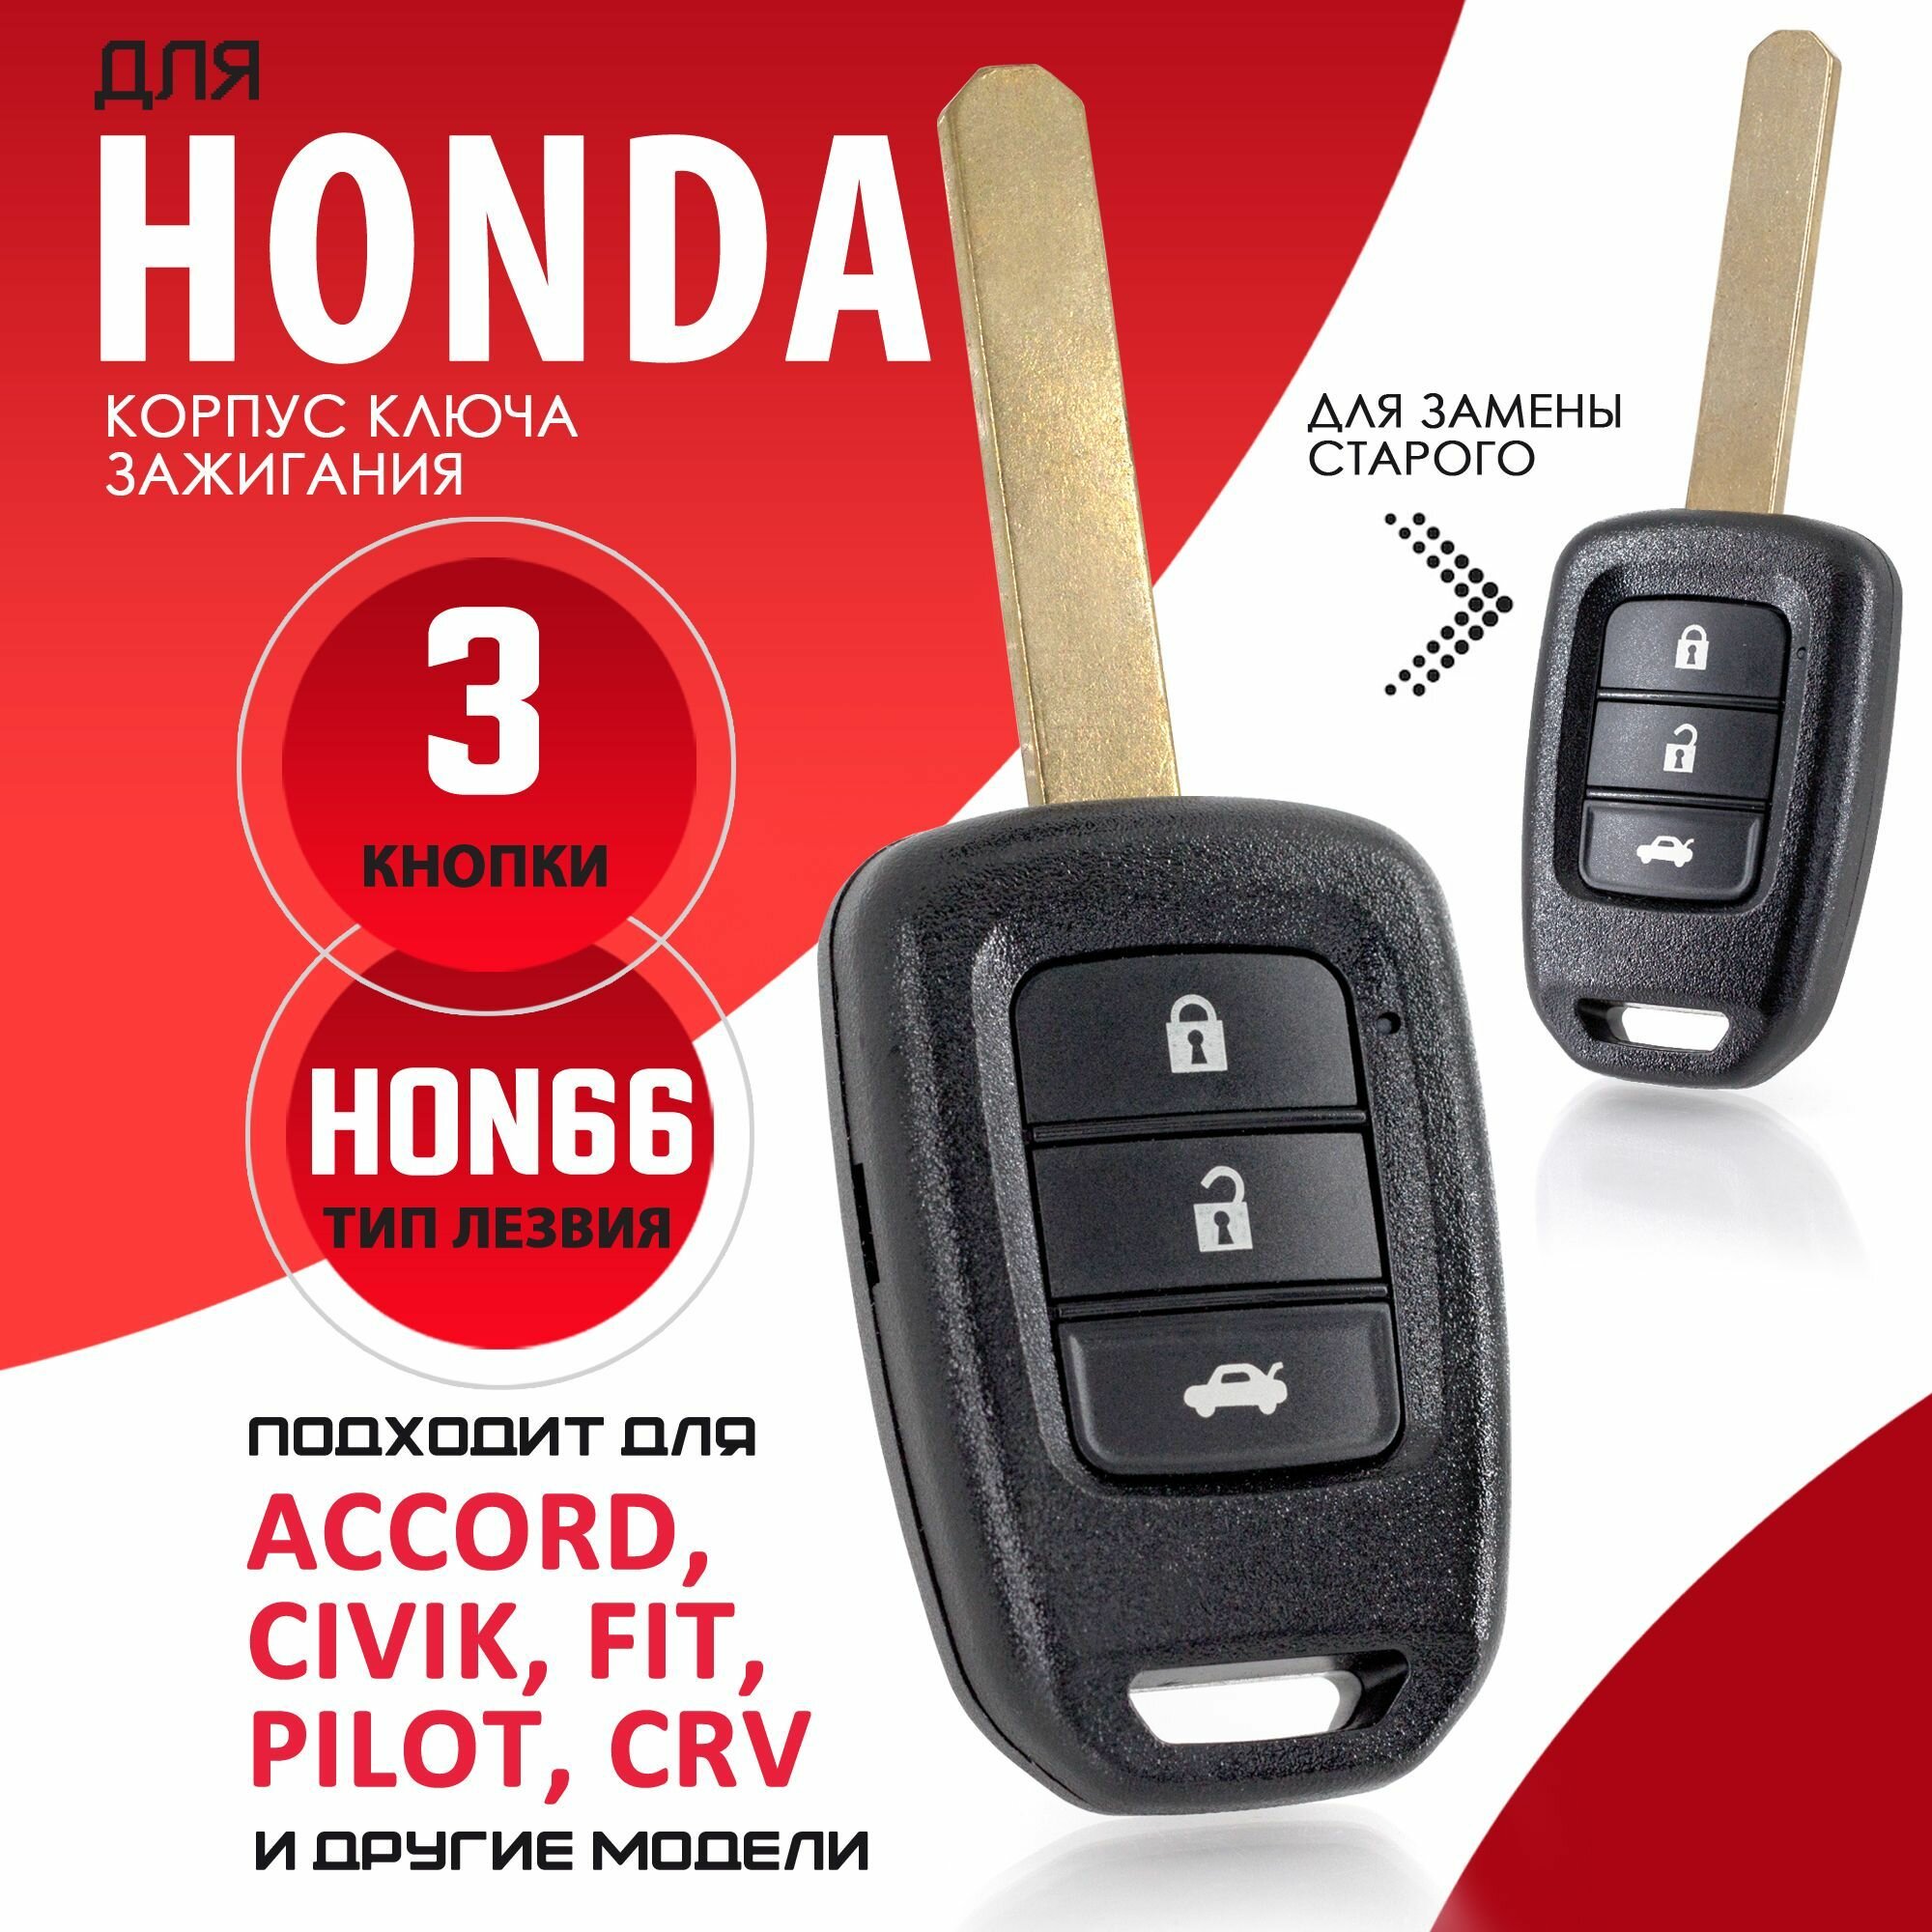 Корпус ключа зажигания для Honda Accord CR-V Civic Fit Pilot Inspire Tourer Ferio - 1 штука (3х кнопочный ключ, лезвие HON66)